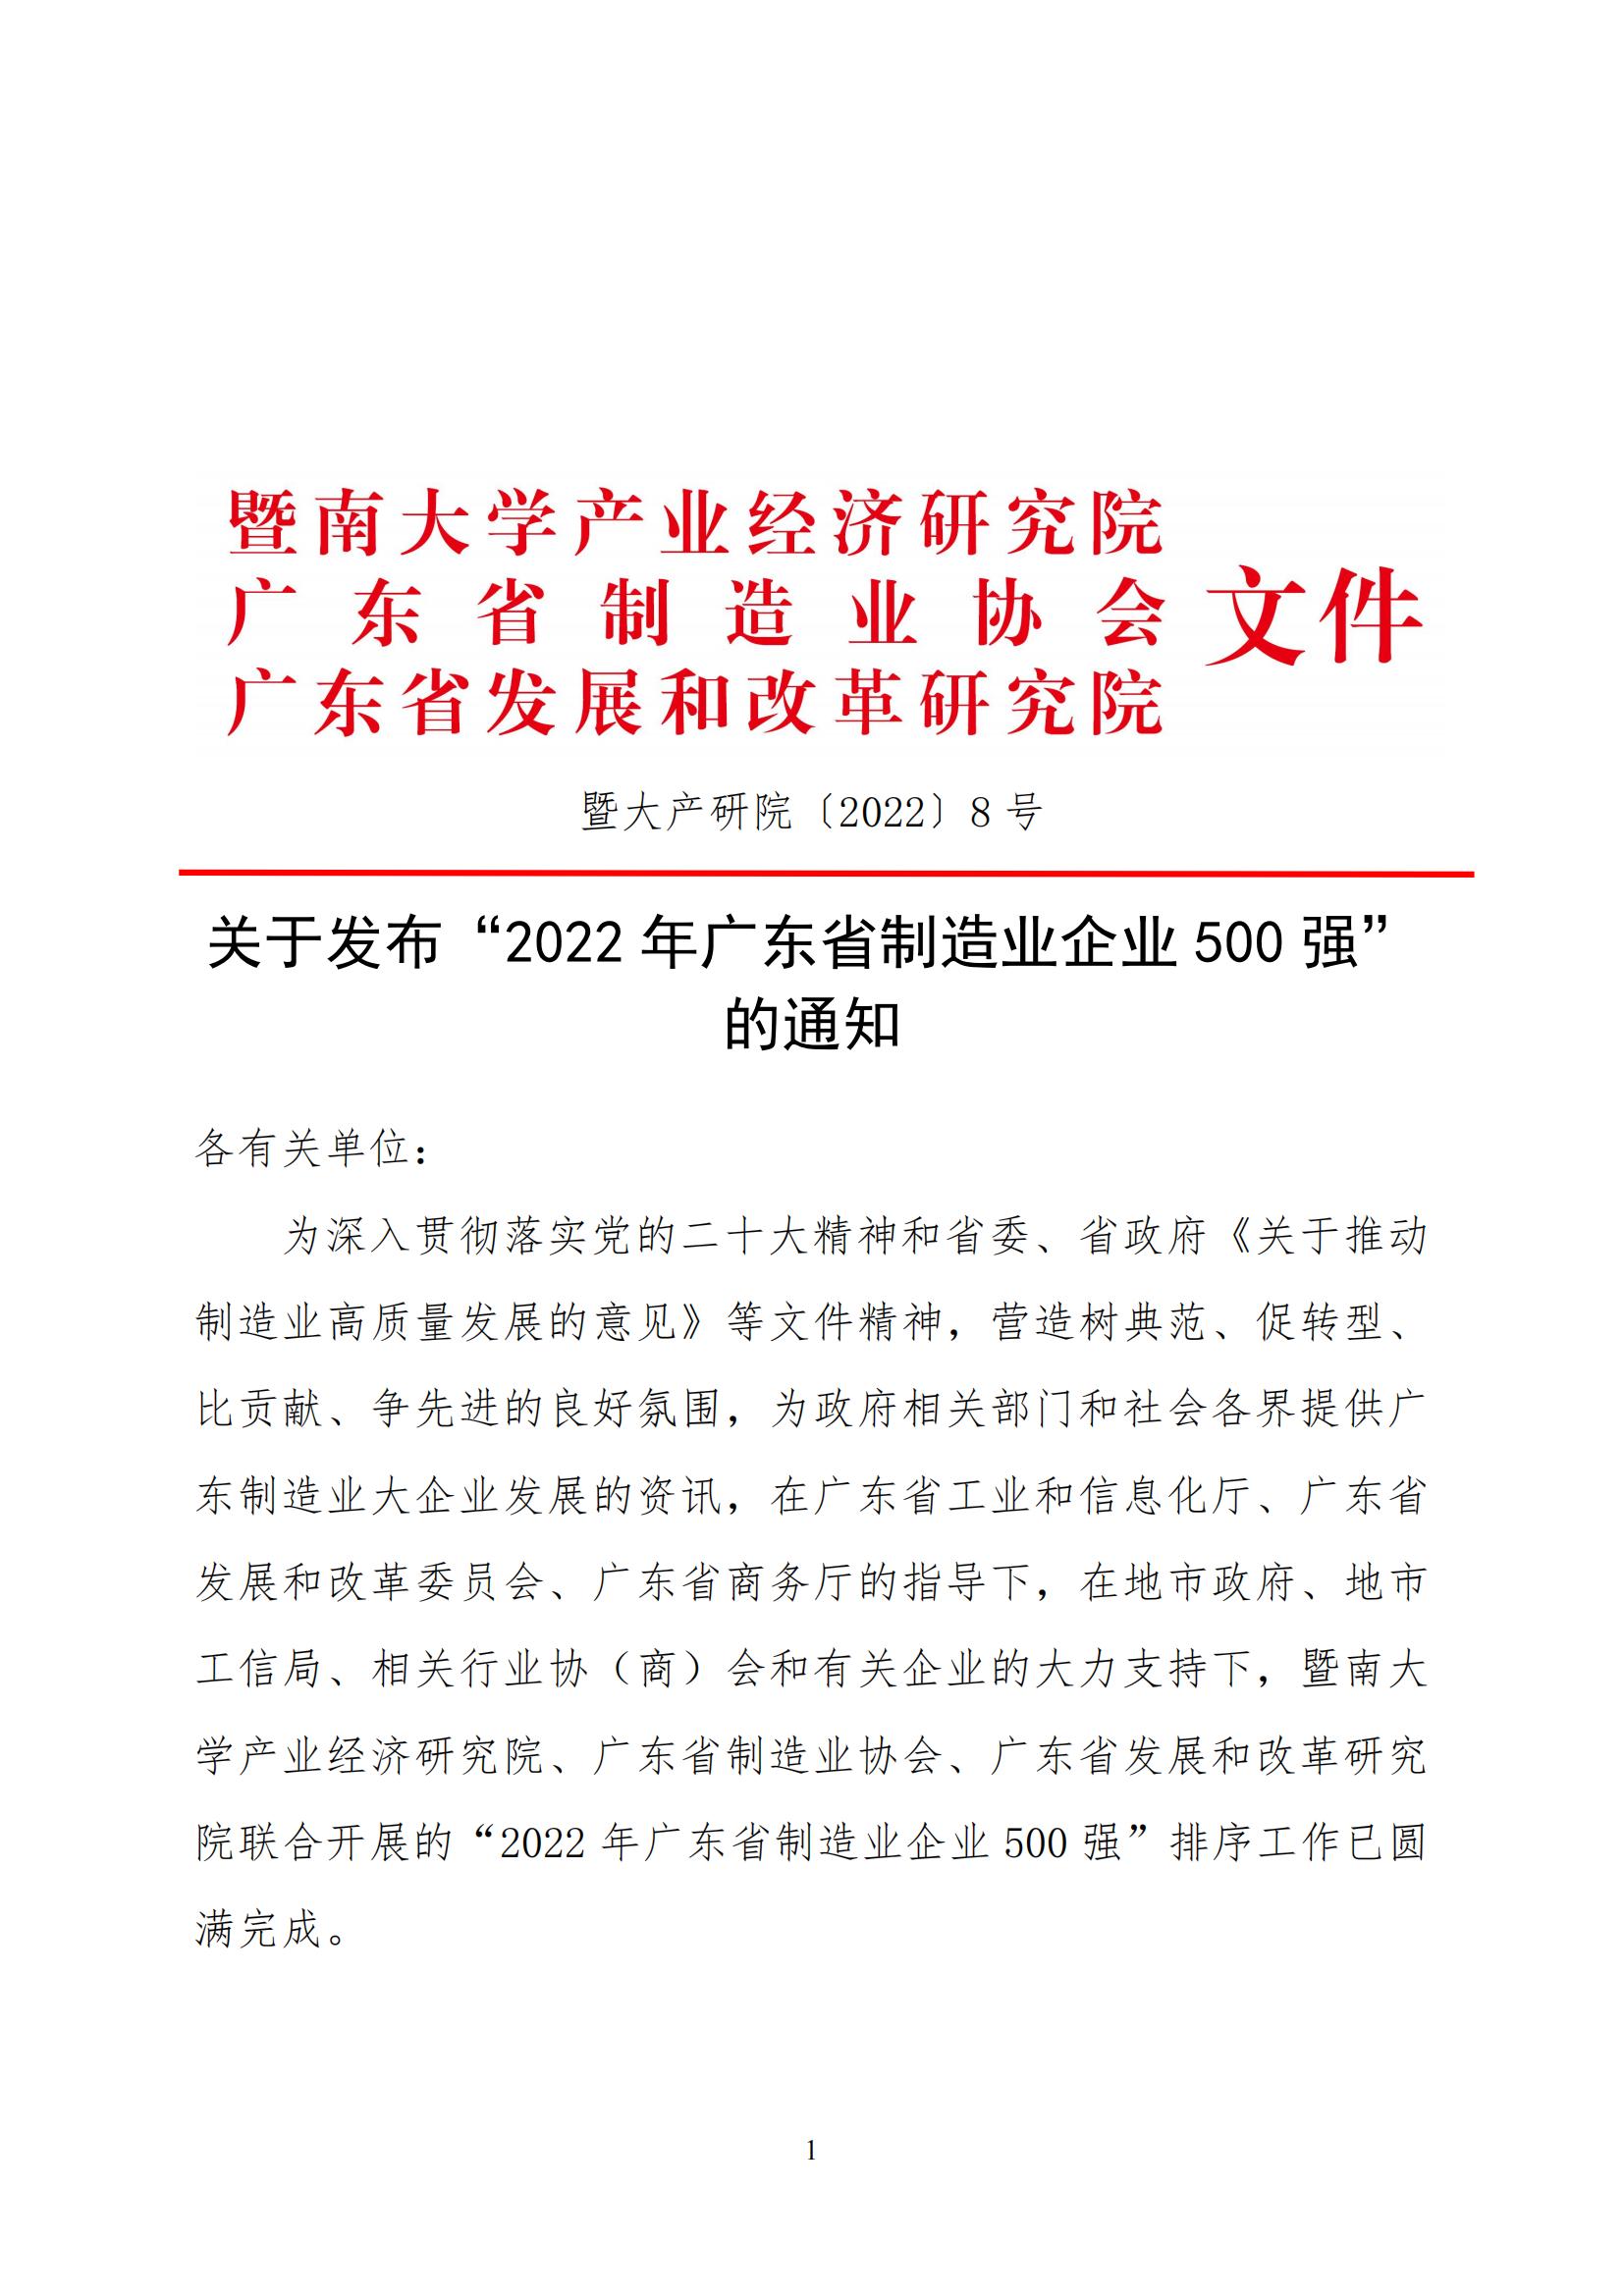 关于发布“2022年广东省制造业企业500强”的通知